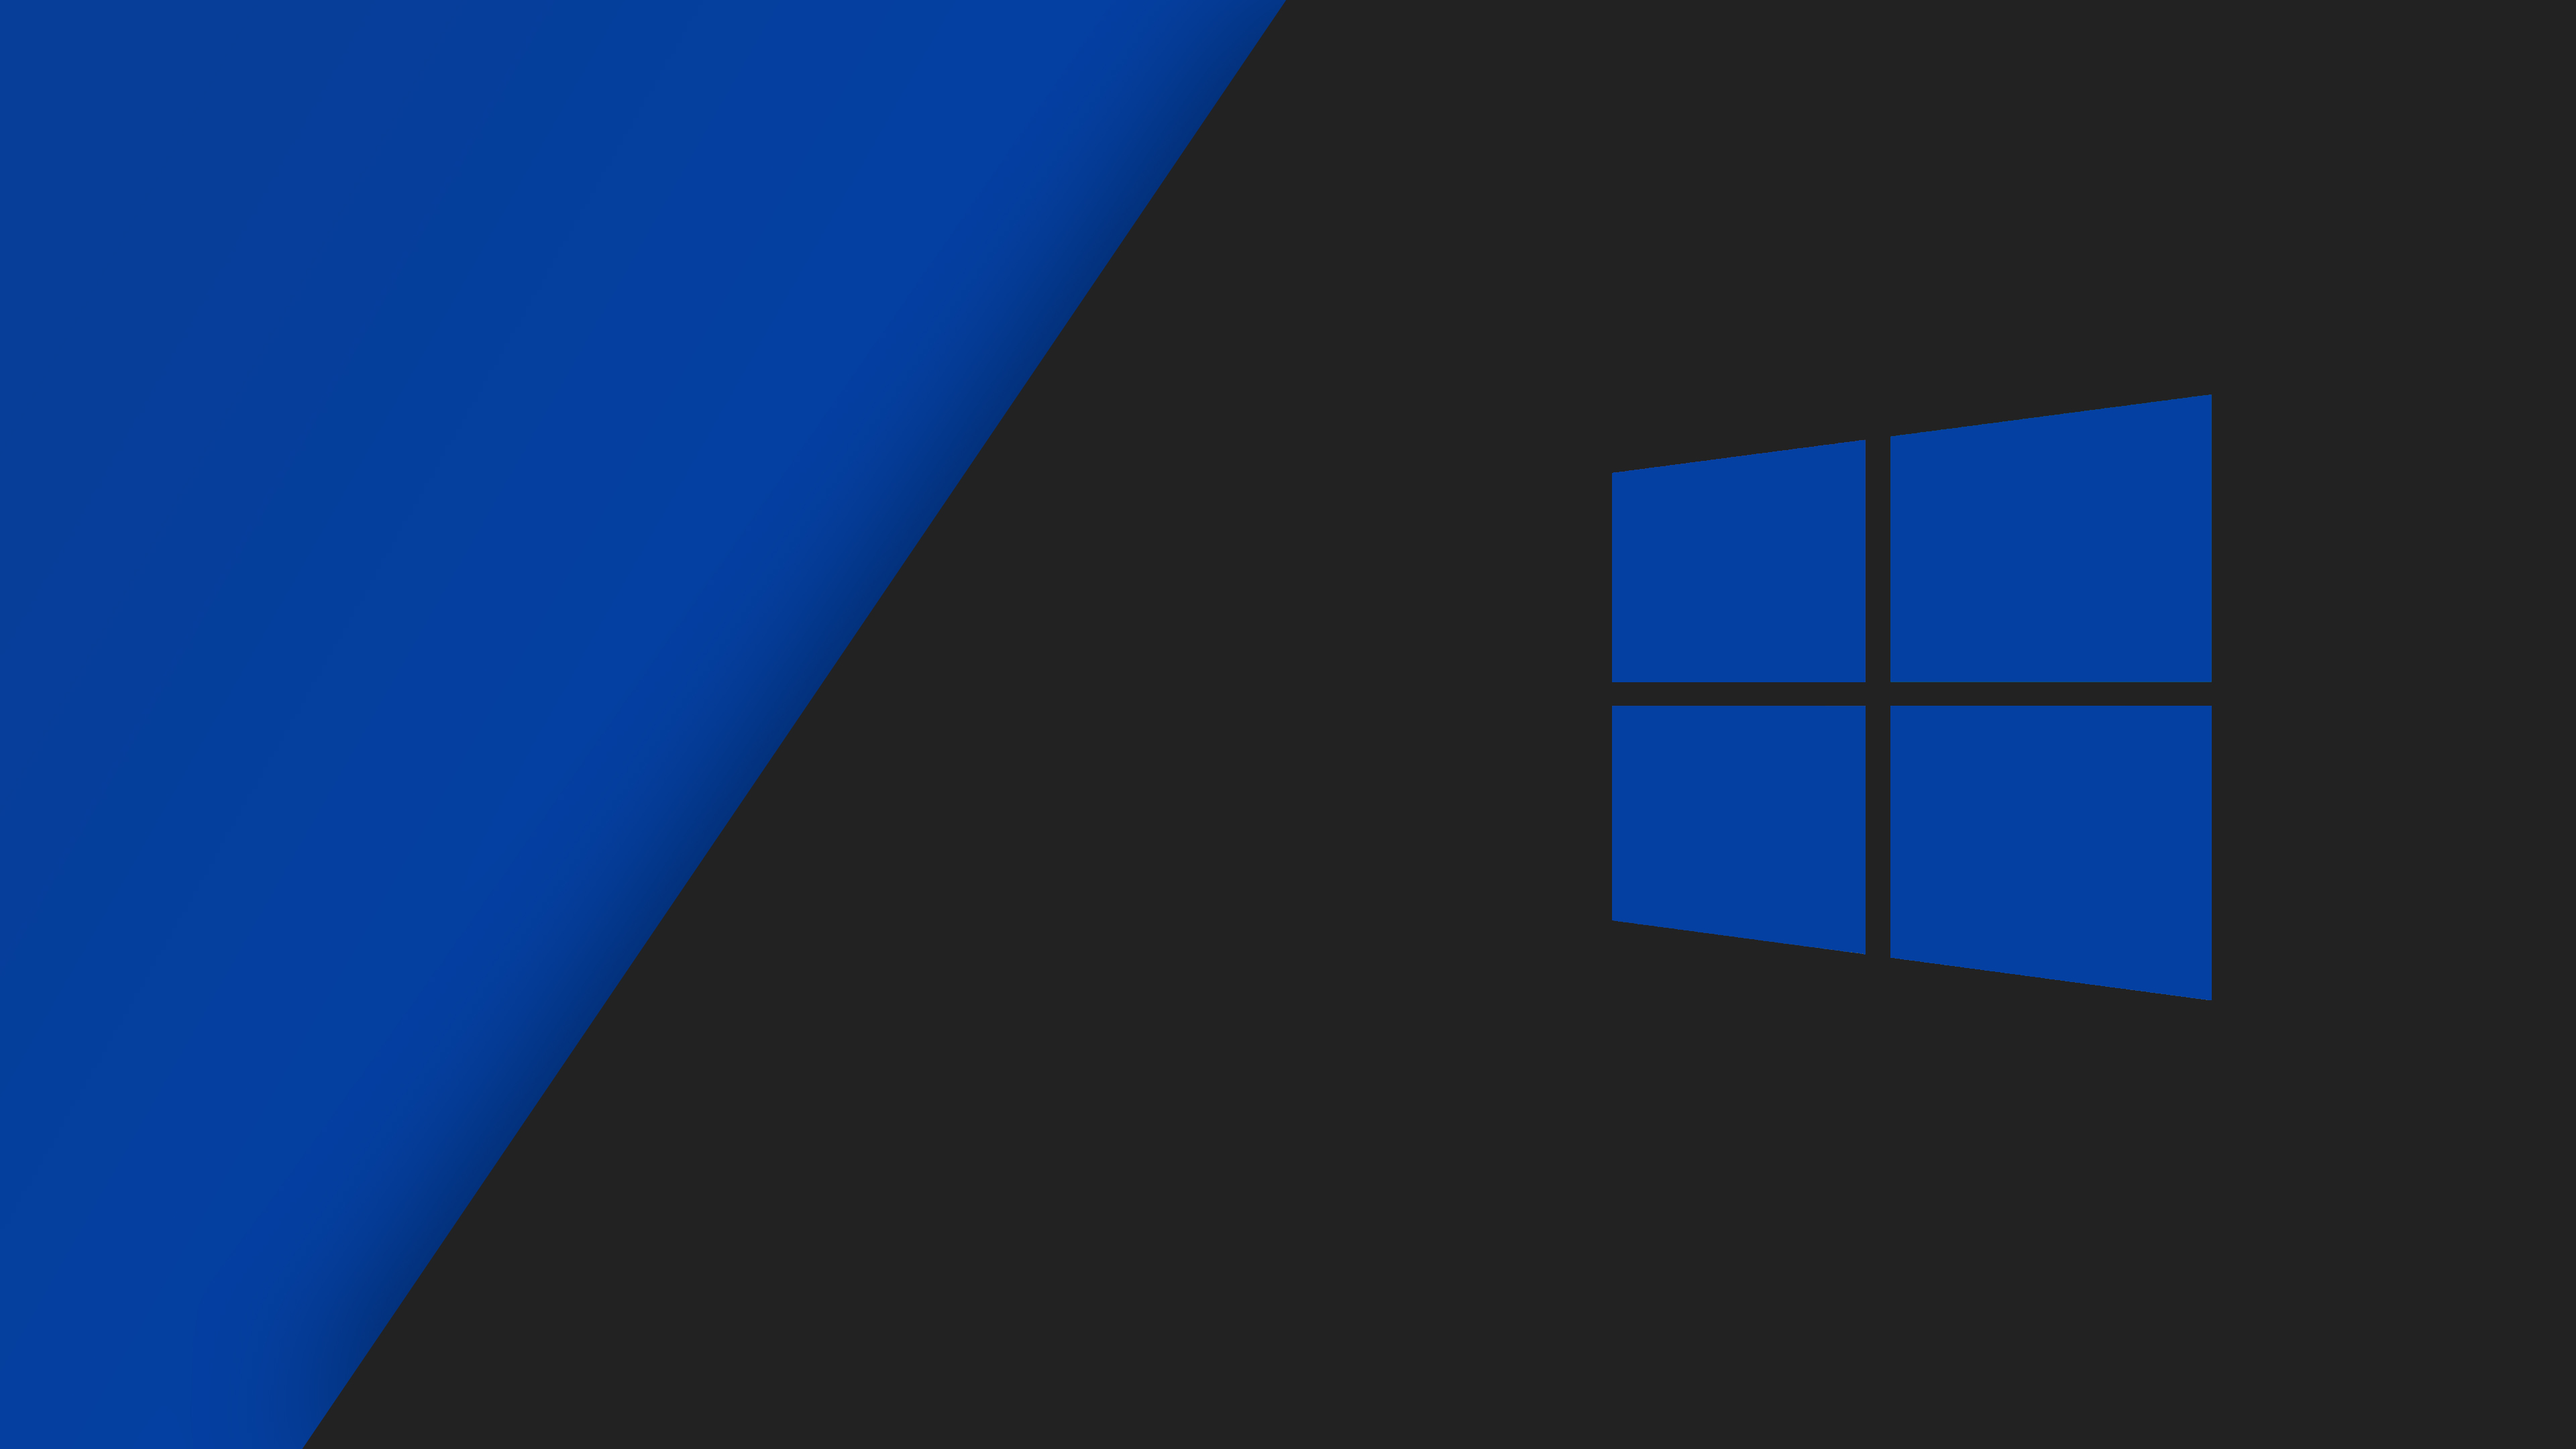 Muốn tìm kiếm một hình nền Windows 10 màu xanh đậm và sắc nét? Đừng bỏ lỡ hình nền này với độ phân giải cao, sắc nét tuyệt đẹp và được thiết kế độc đáo. Bạn sẽ đắm mình trong màu xanh đậm, tạo nên một giao diện mới lạ cho thiết bị của mình.